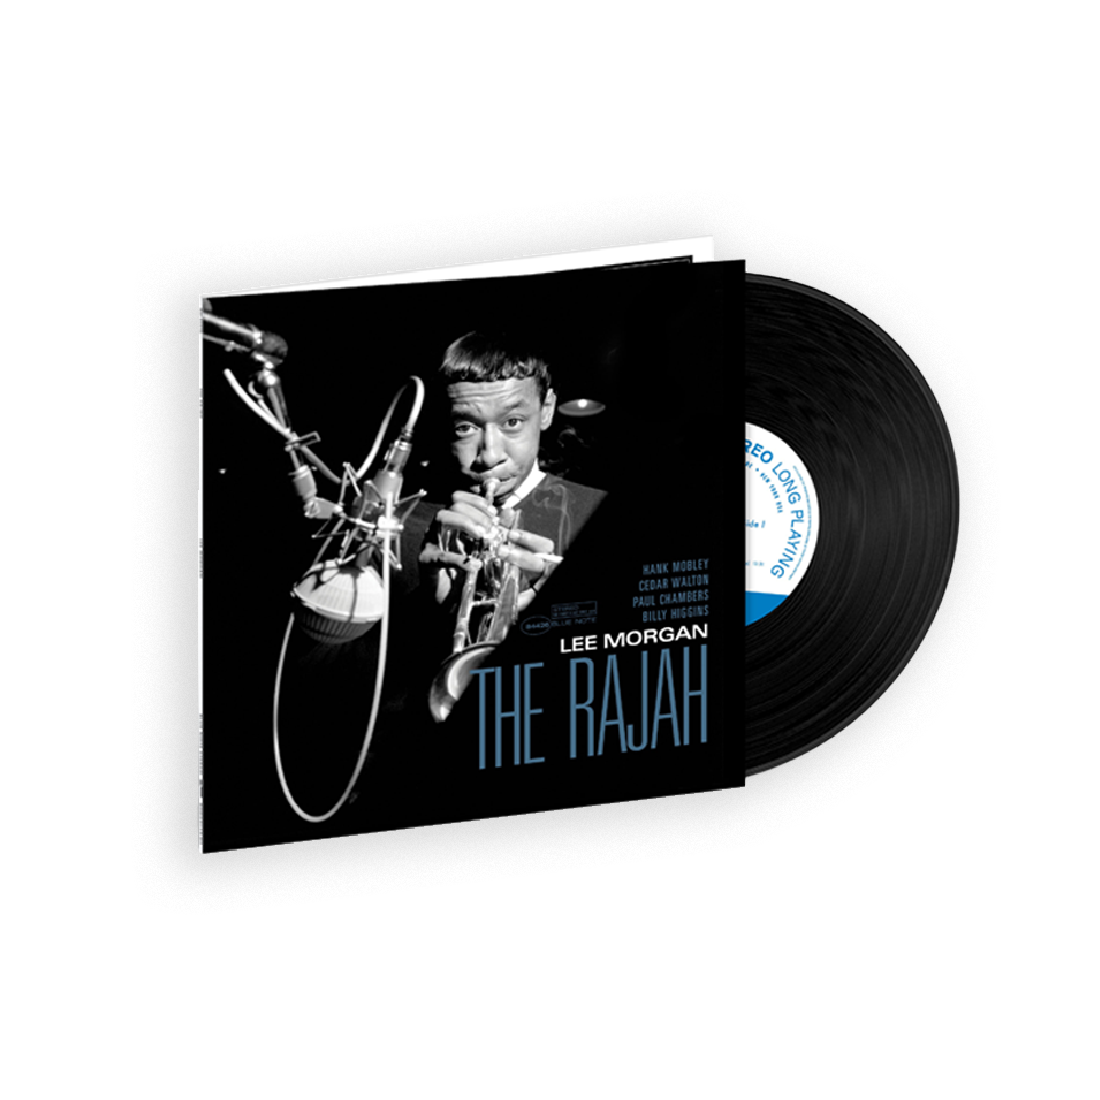 Lee Morgan - The Rajah (Tone Poet Series): Vinyl LP